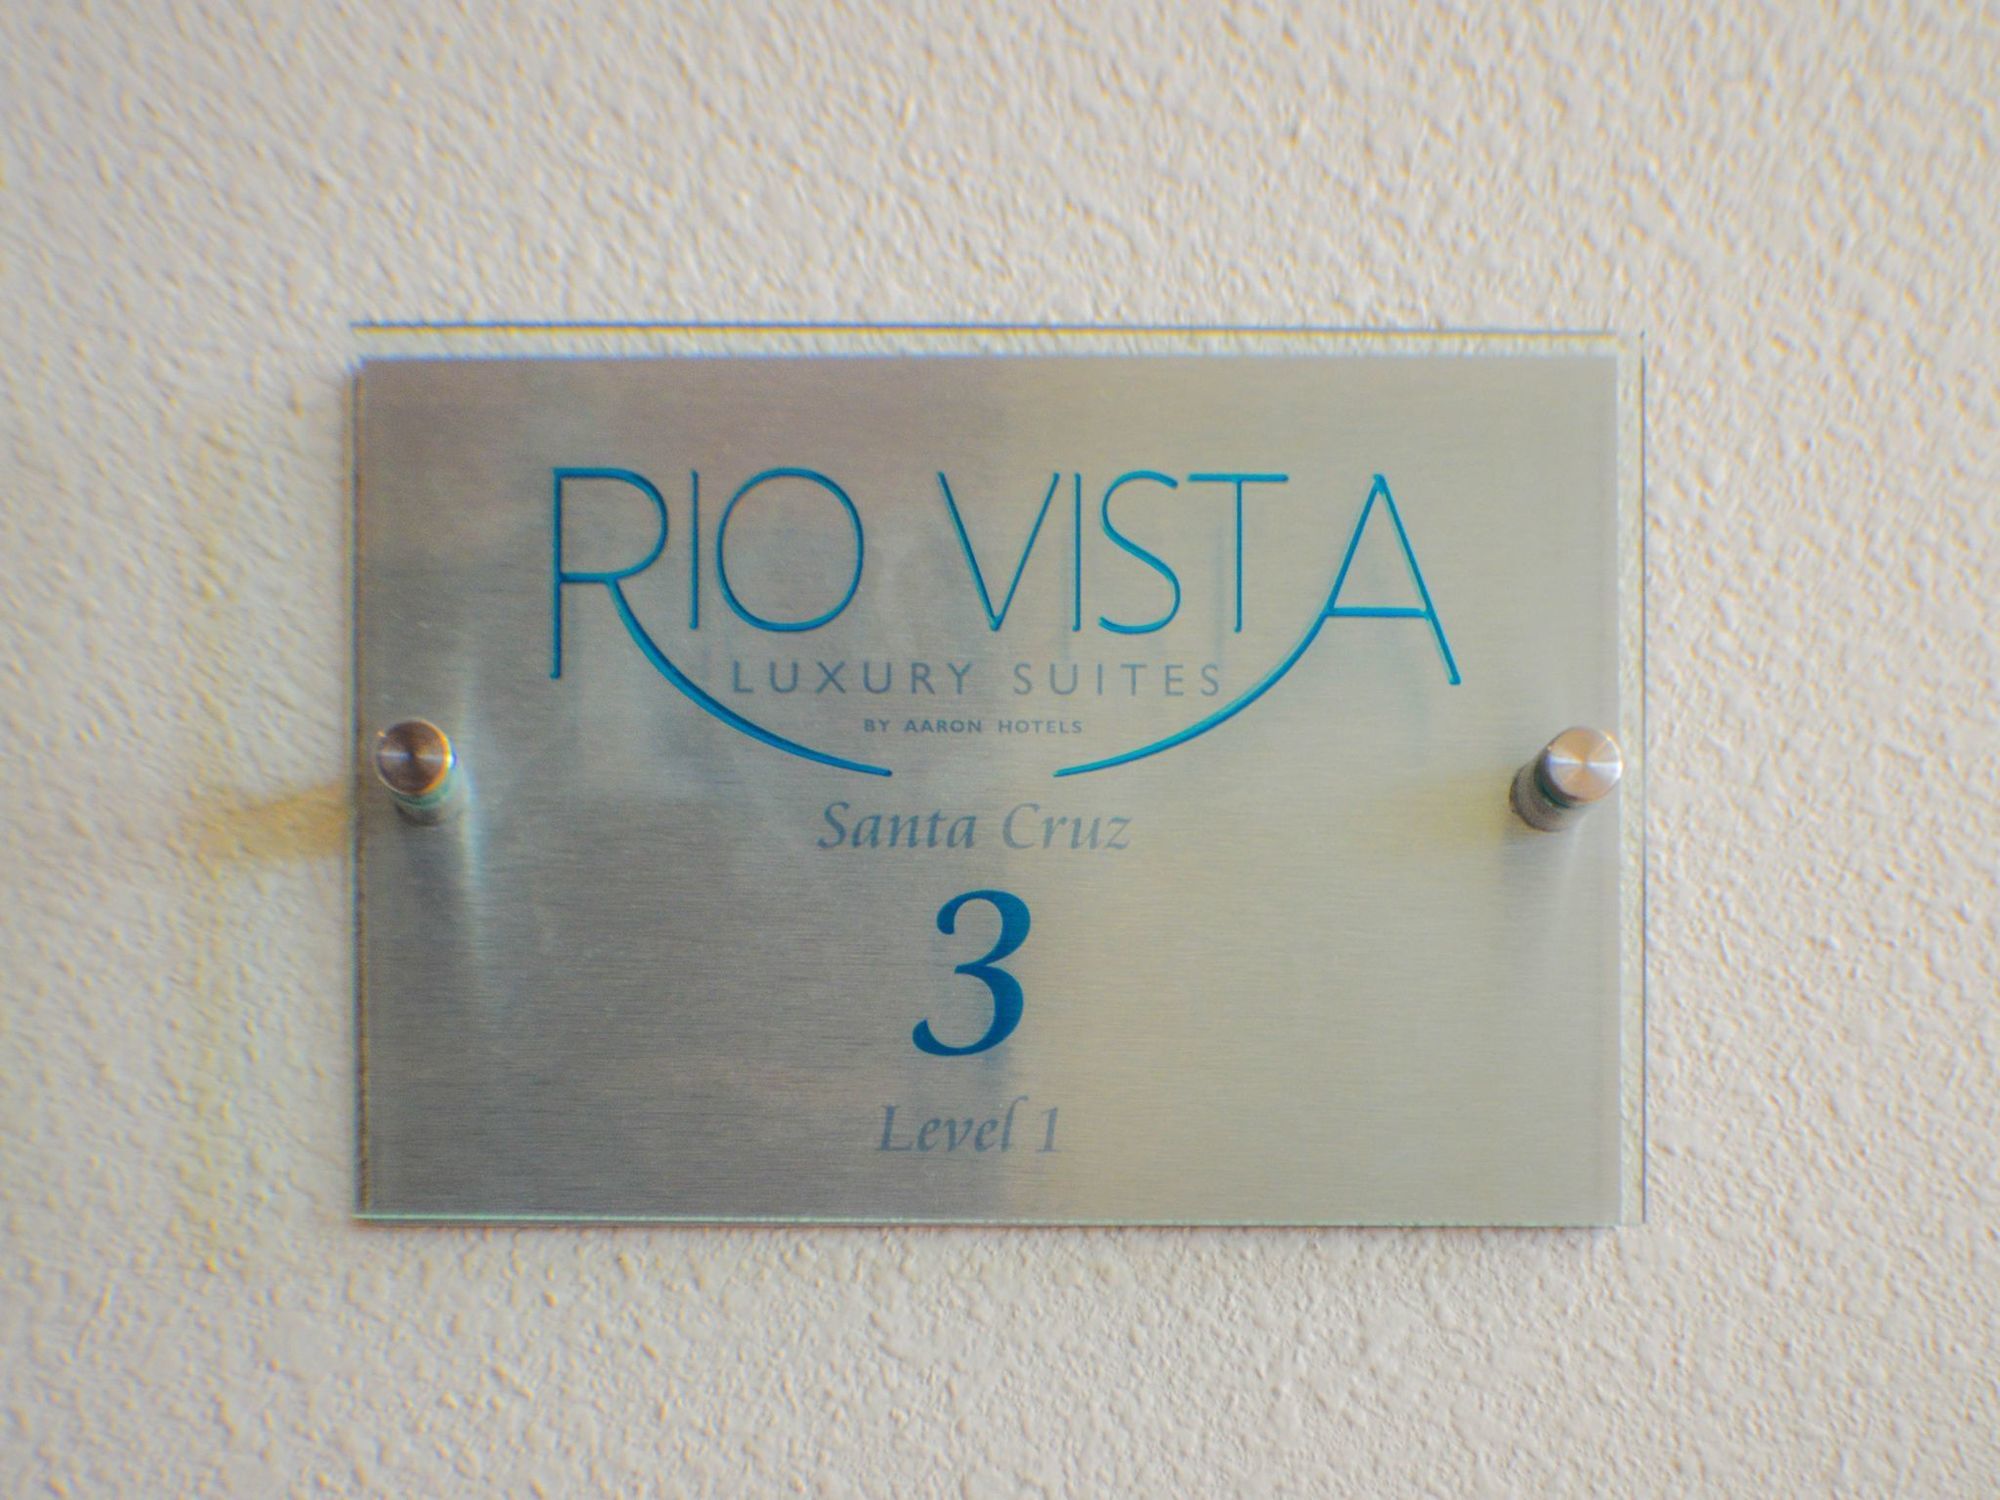 Rio Vista Hotel